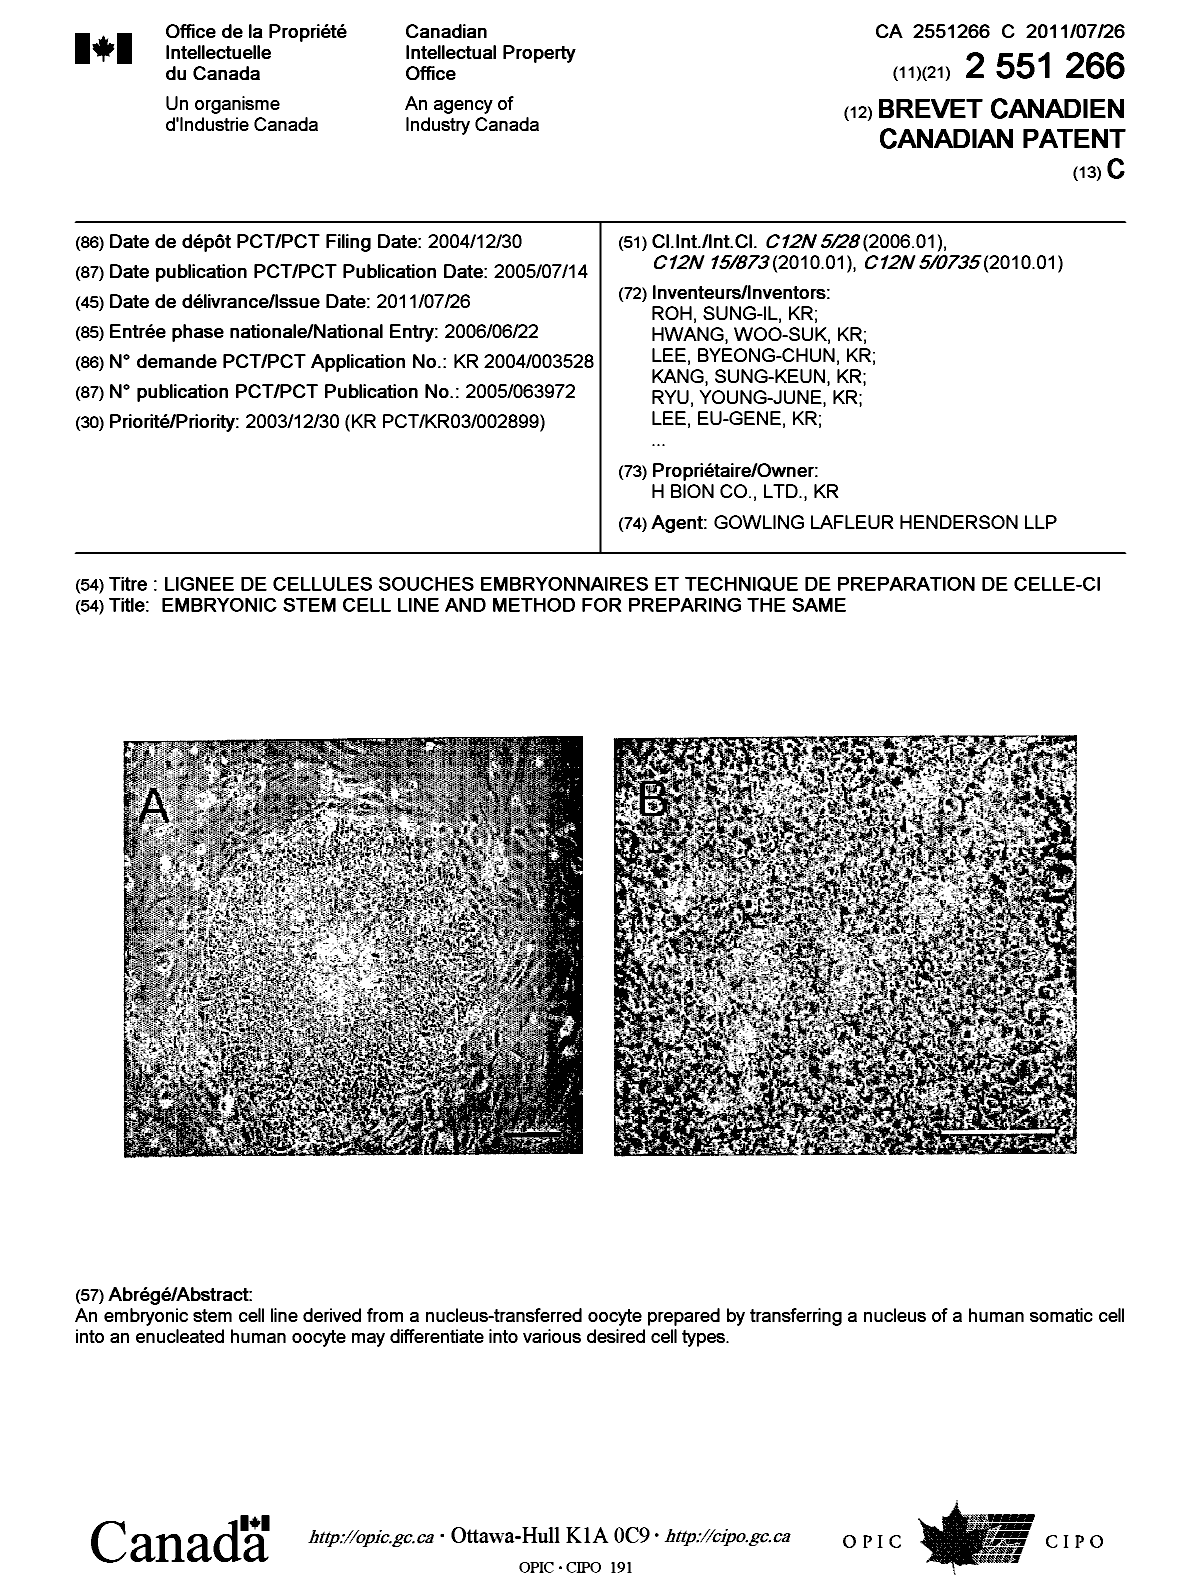 Document de brevet canadien 2551266. Page couverture 20101223. Image 1 de 2